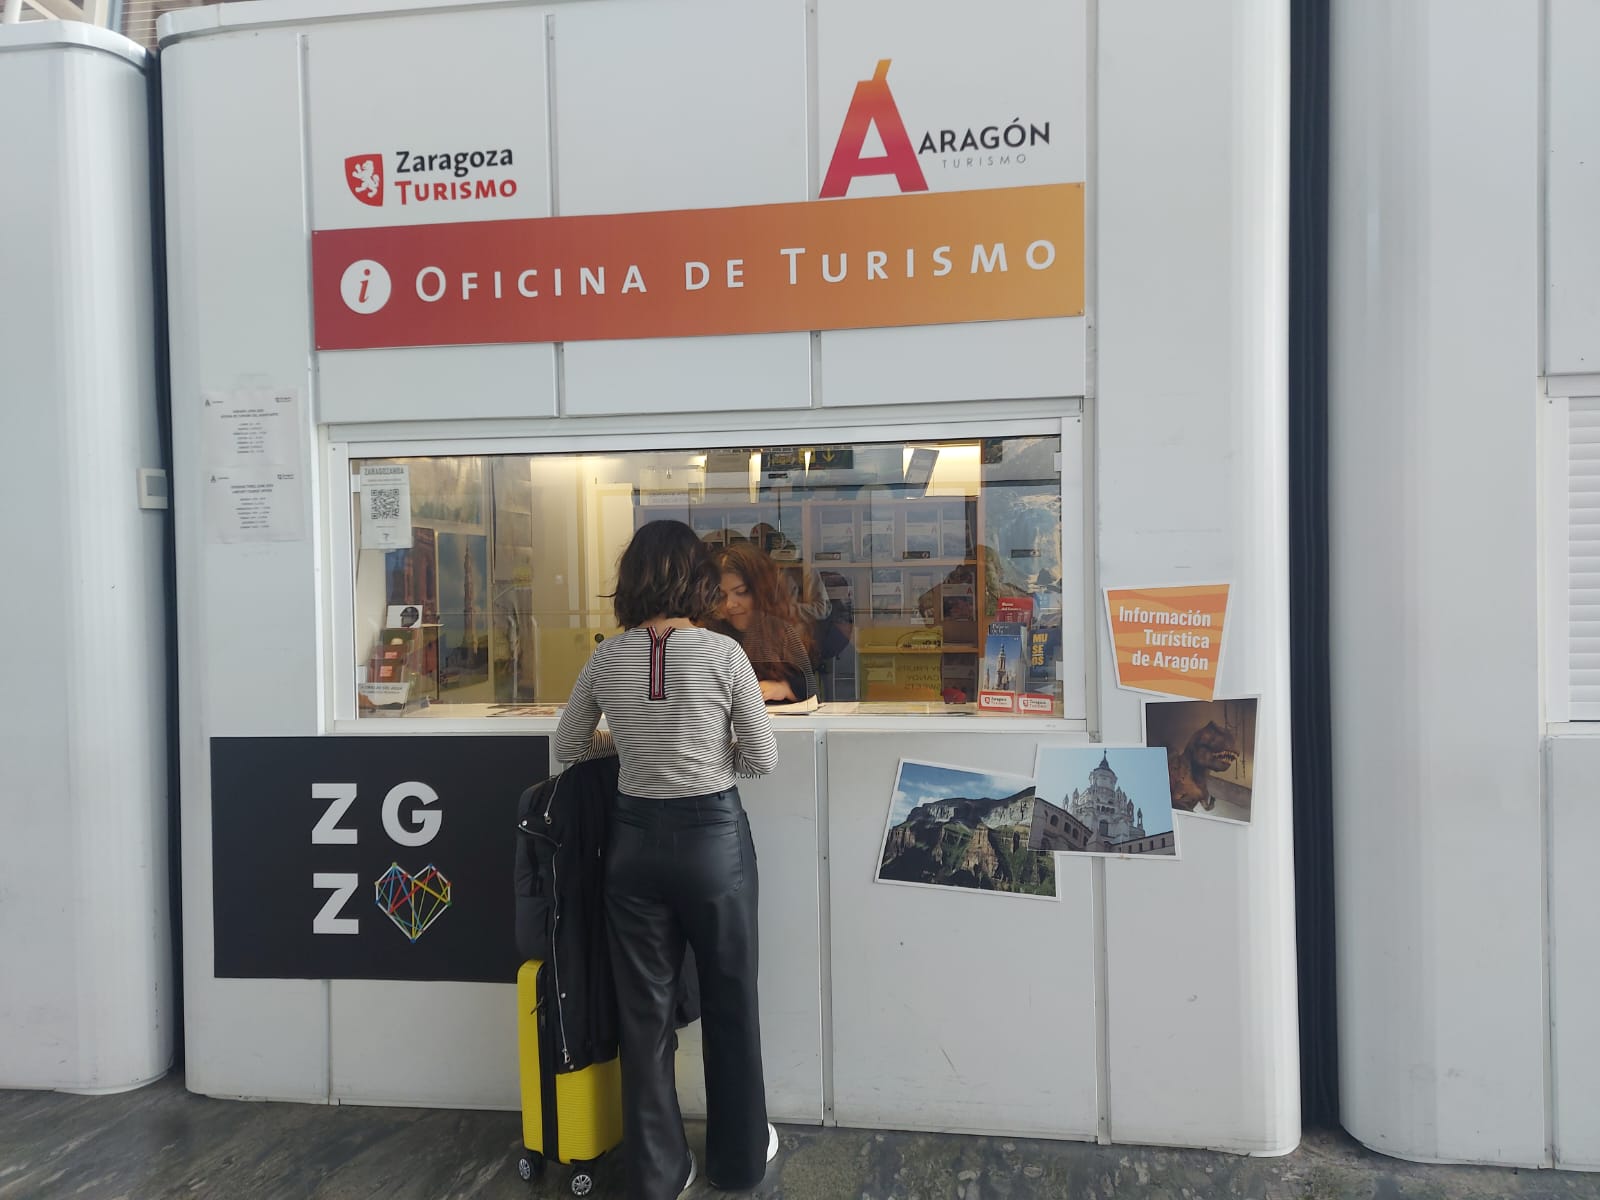 Fotografa Oficina de Turismo del Aeropuerto de Zaragoza